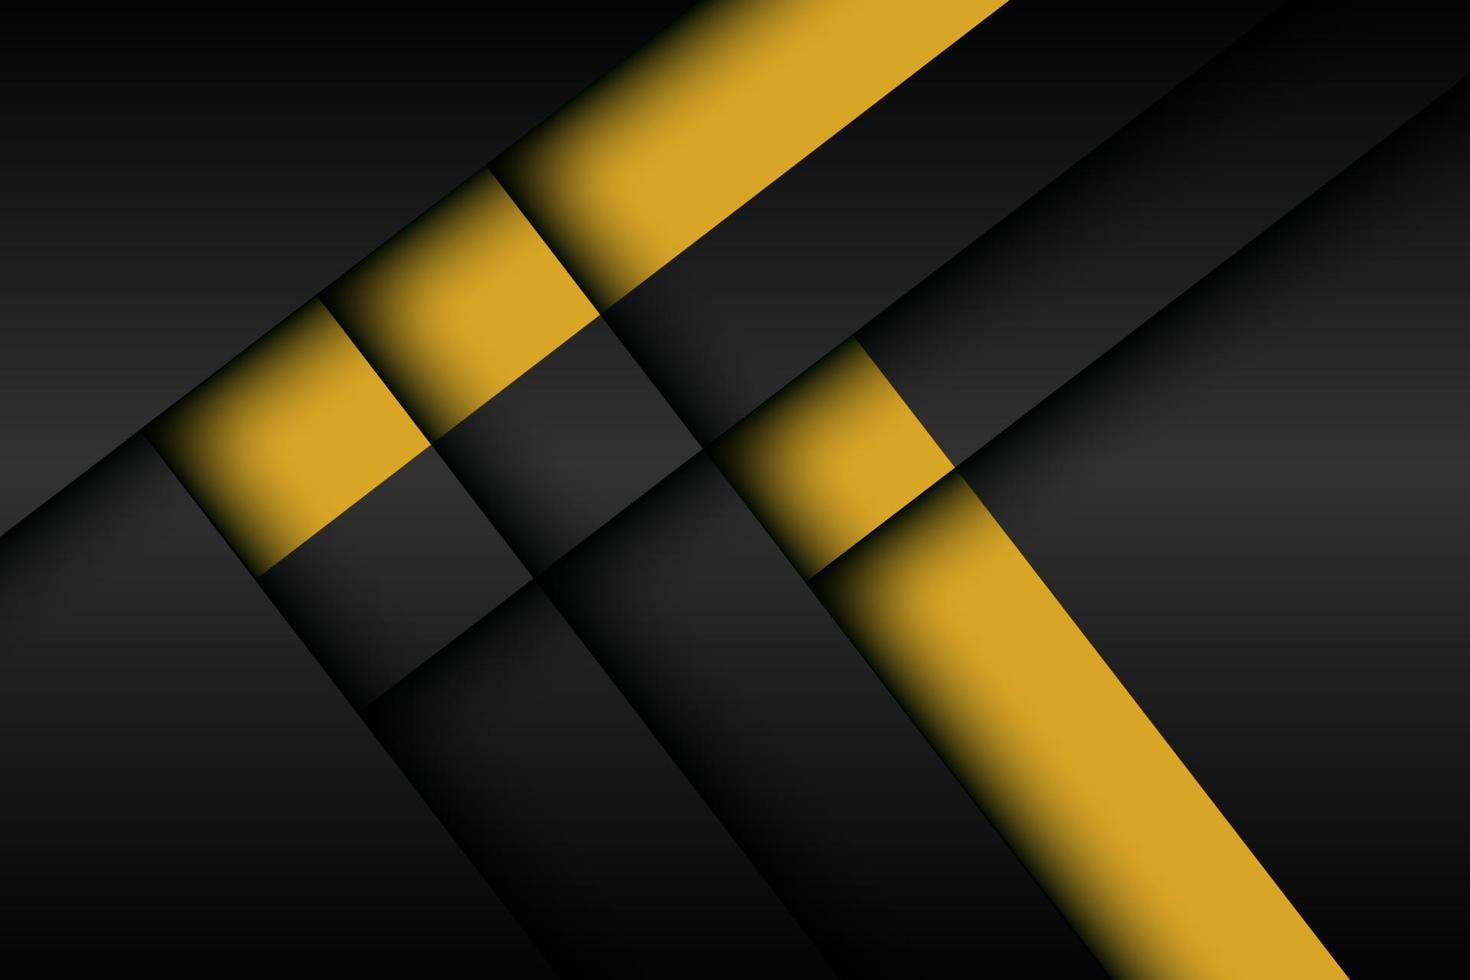 noir abstrait avec fond de couches de dimension d'ombre à rayures jaunes. vecteur eps10